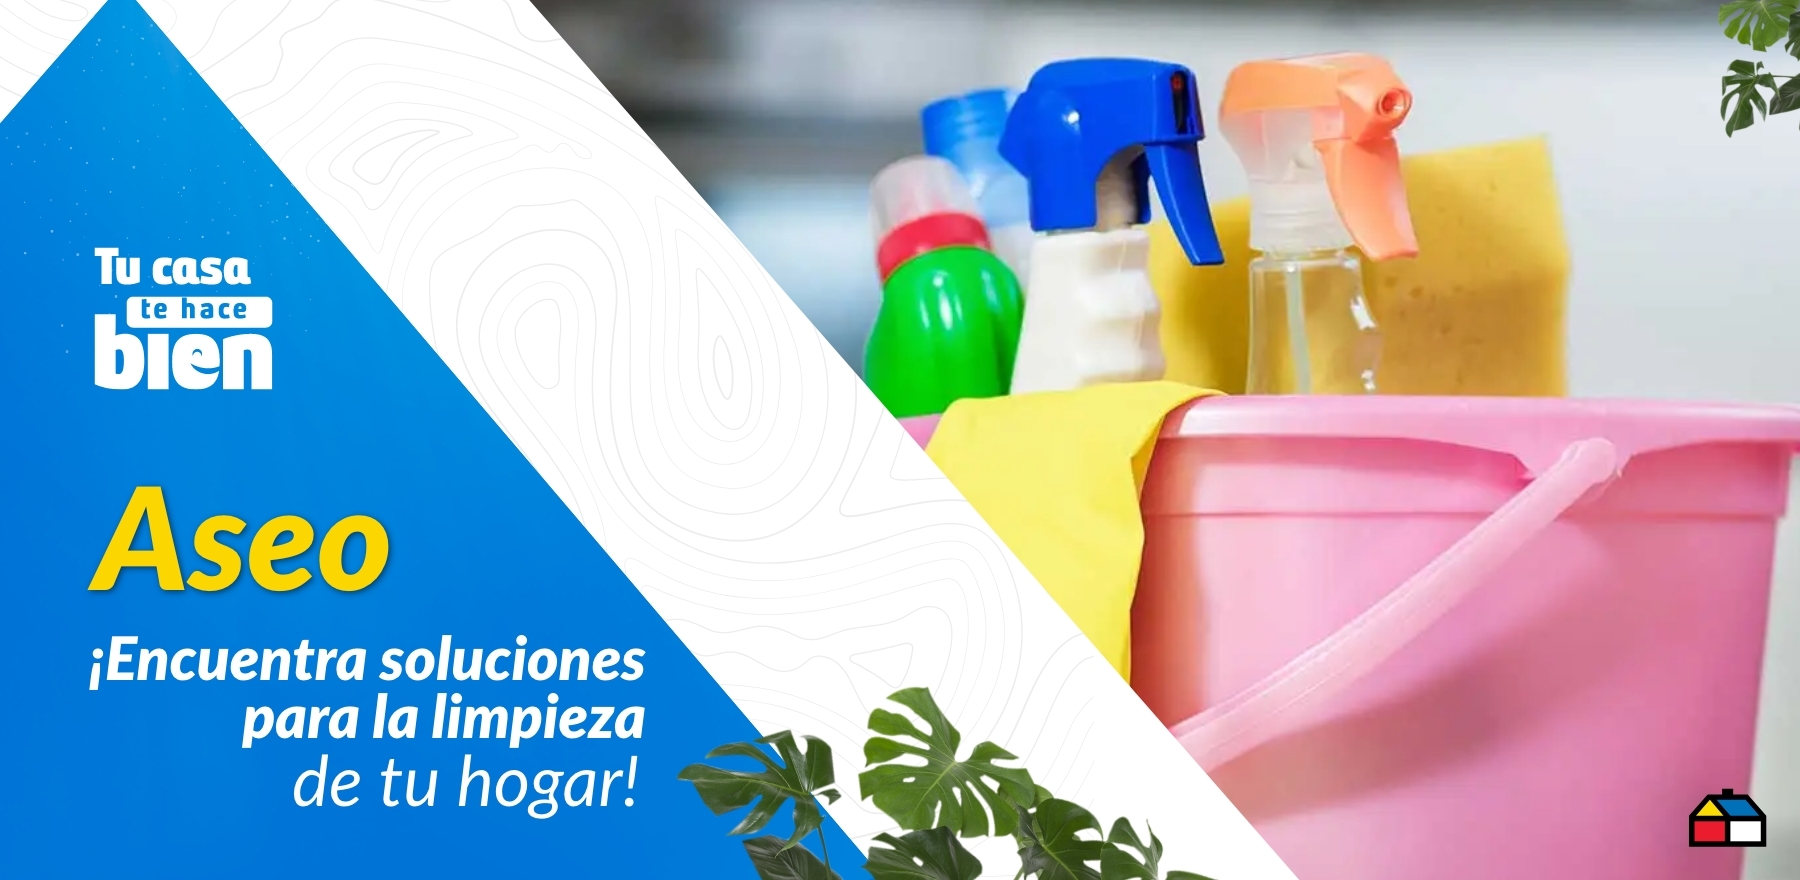 ¡Encuentra soluciones para la limpieza de tu hogar!